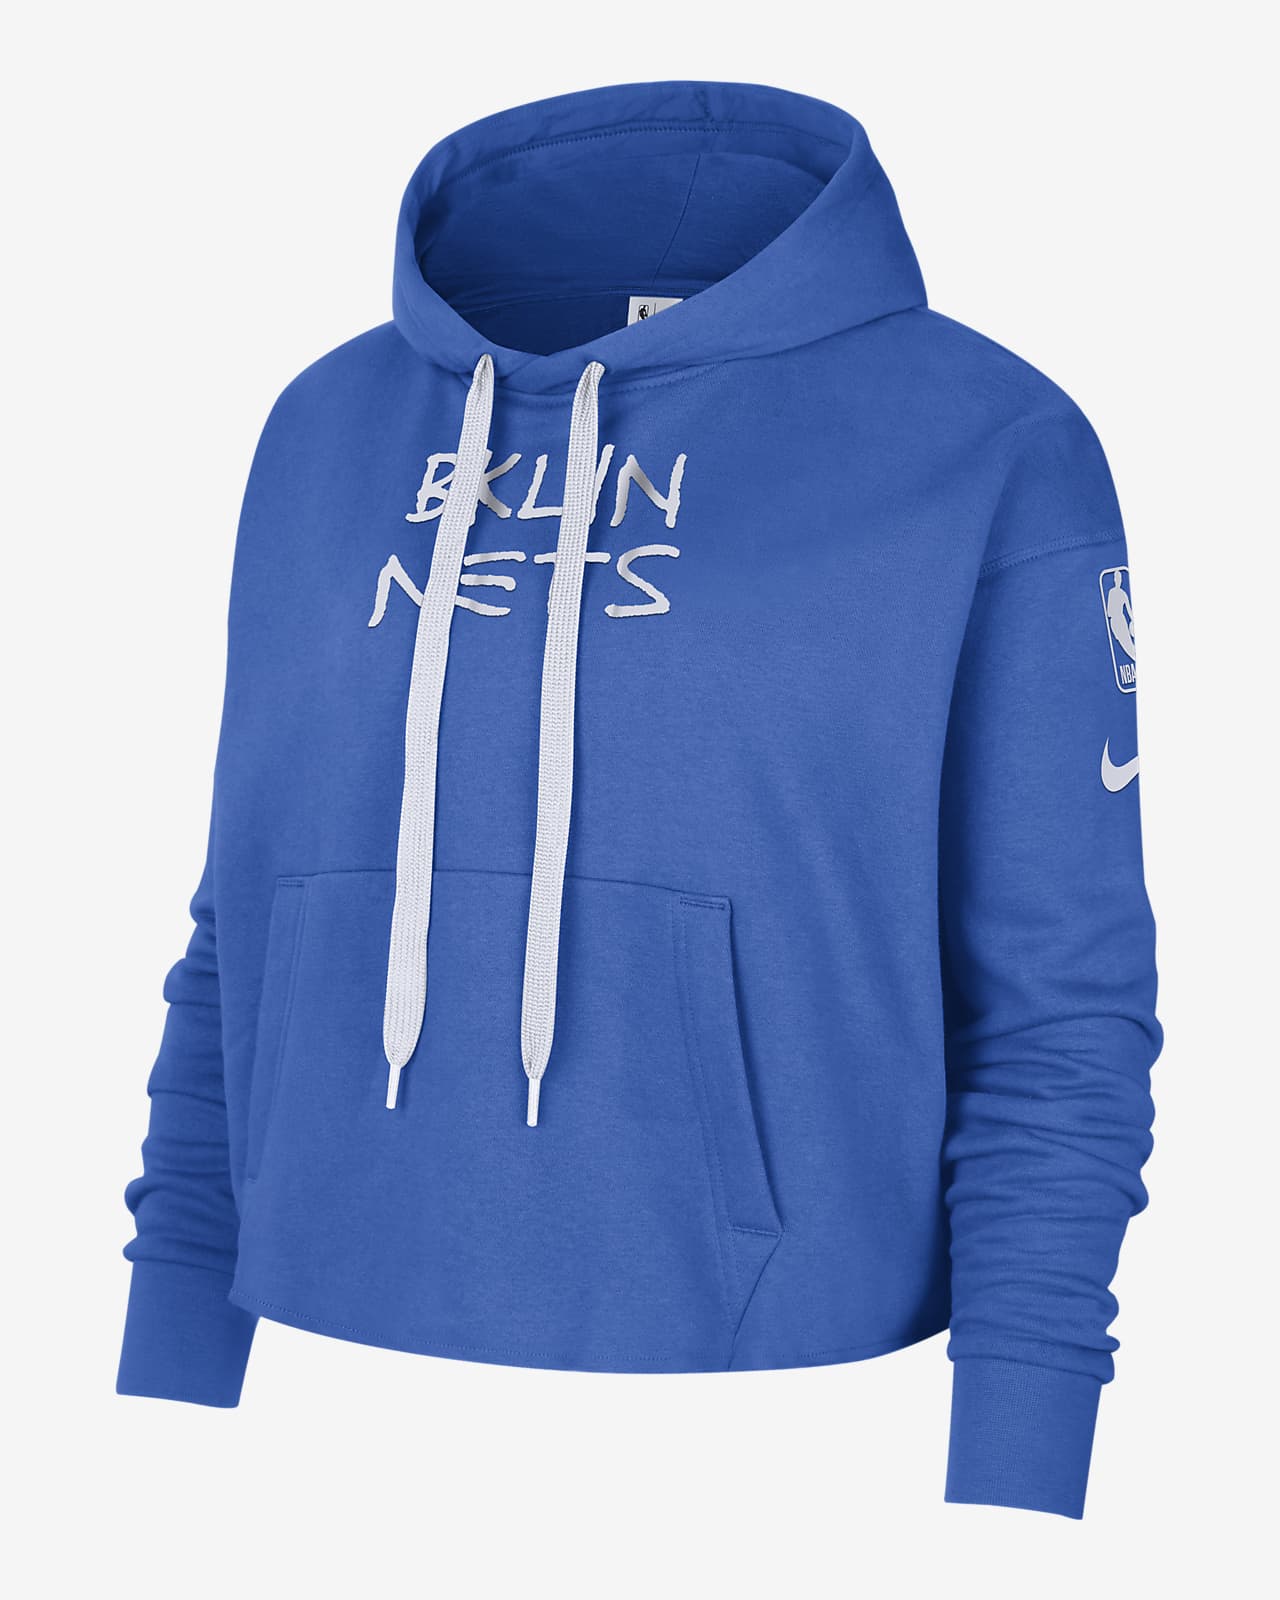 Brooklyn Nets Jordan hoodie - Youth